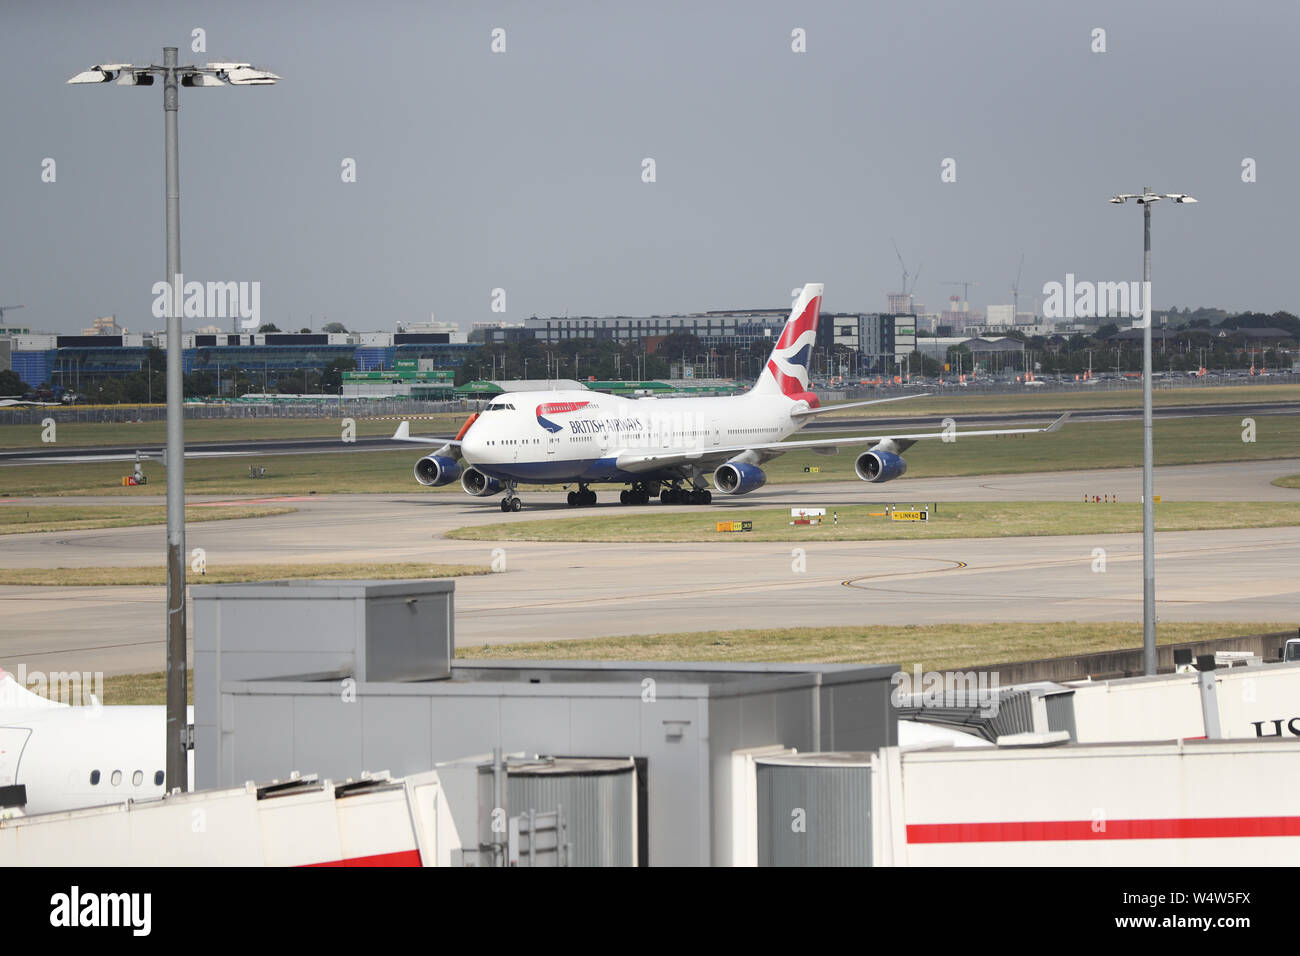 Ebenen auf der Start- und Landebahn am Flughafen Heathrow. Das Vereinigte Königreich hat den heißesten Juli Tag auf Aufzeichnung übertraf mit 36,9 Grad Celsius in Heathrow aufgezeichnet wird. Der britischen Rekord von 38,5 Grad kann später am Nachmittag gebrochen werden. Stockfoto